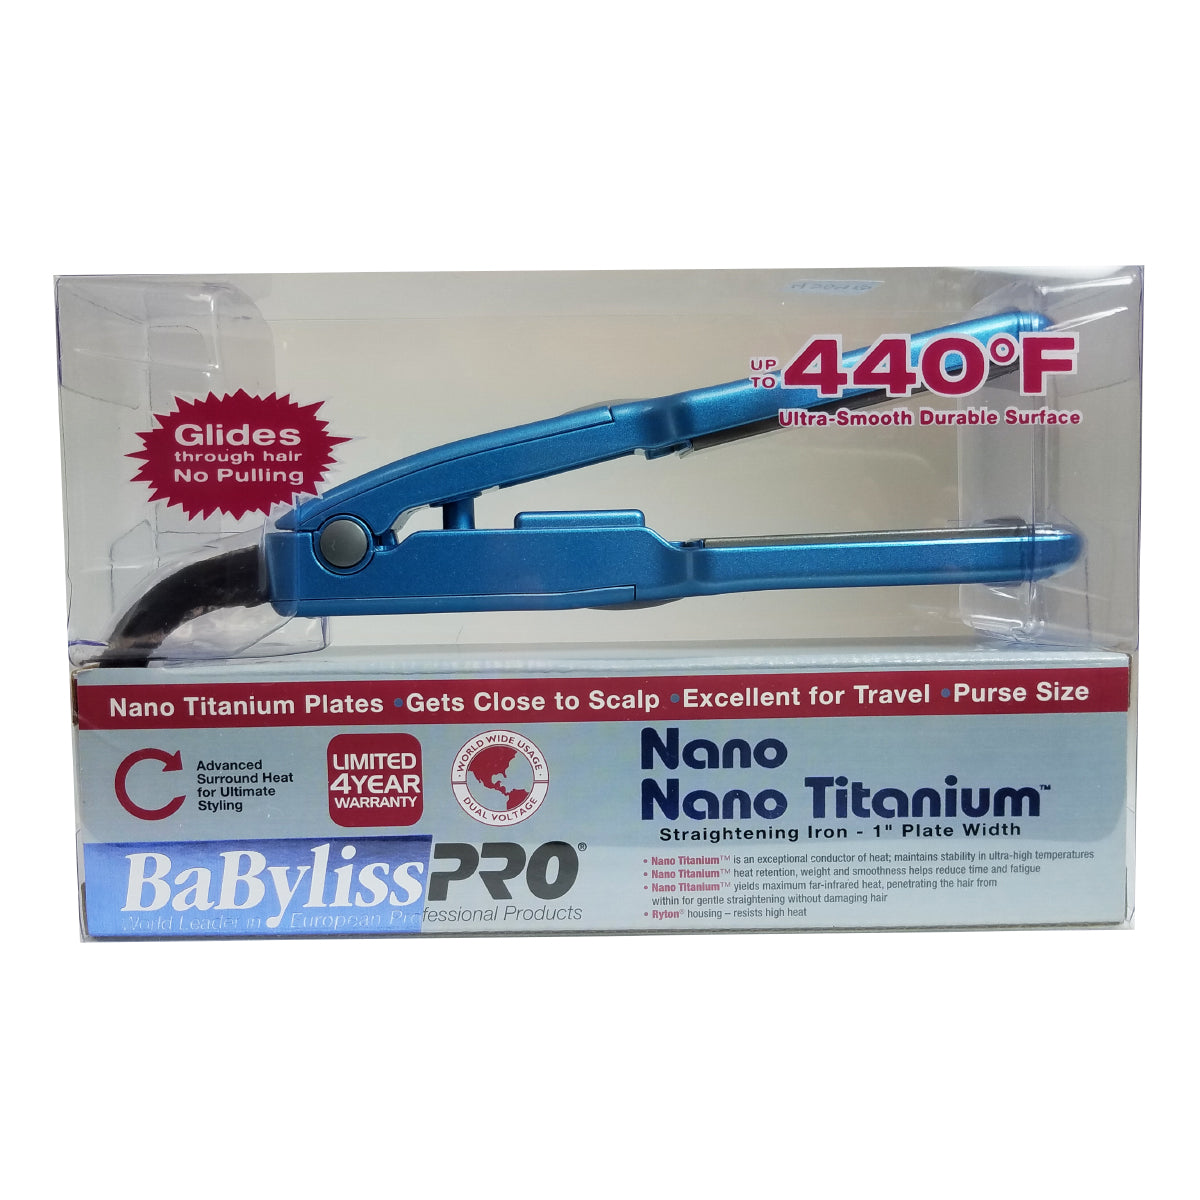 Babyliss Pro Nano Titanium 1 inch Mini Hair Straightening iron